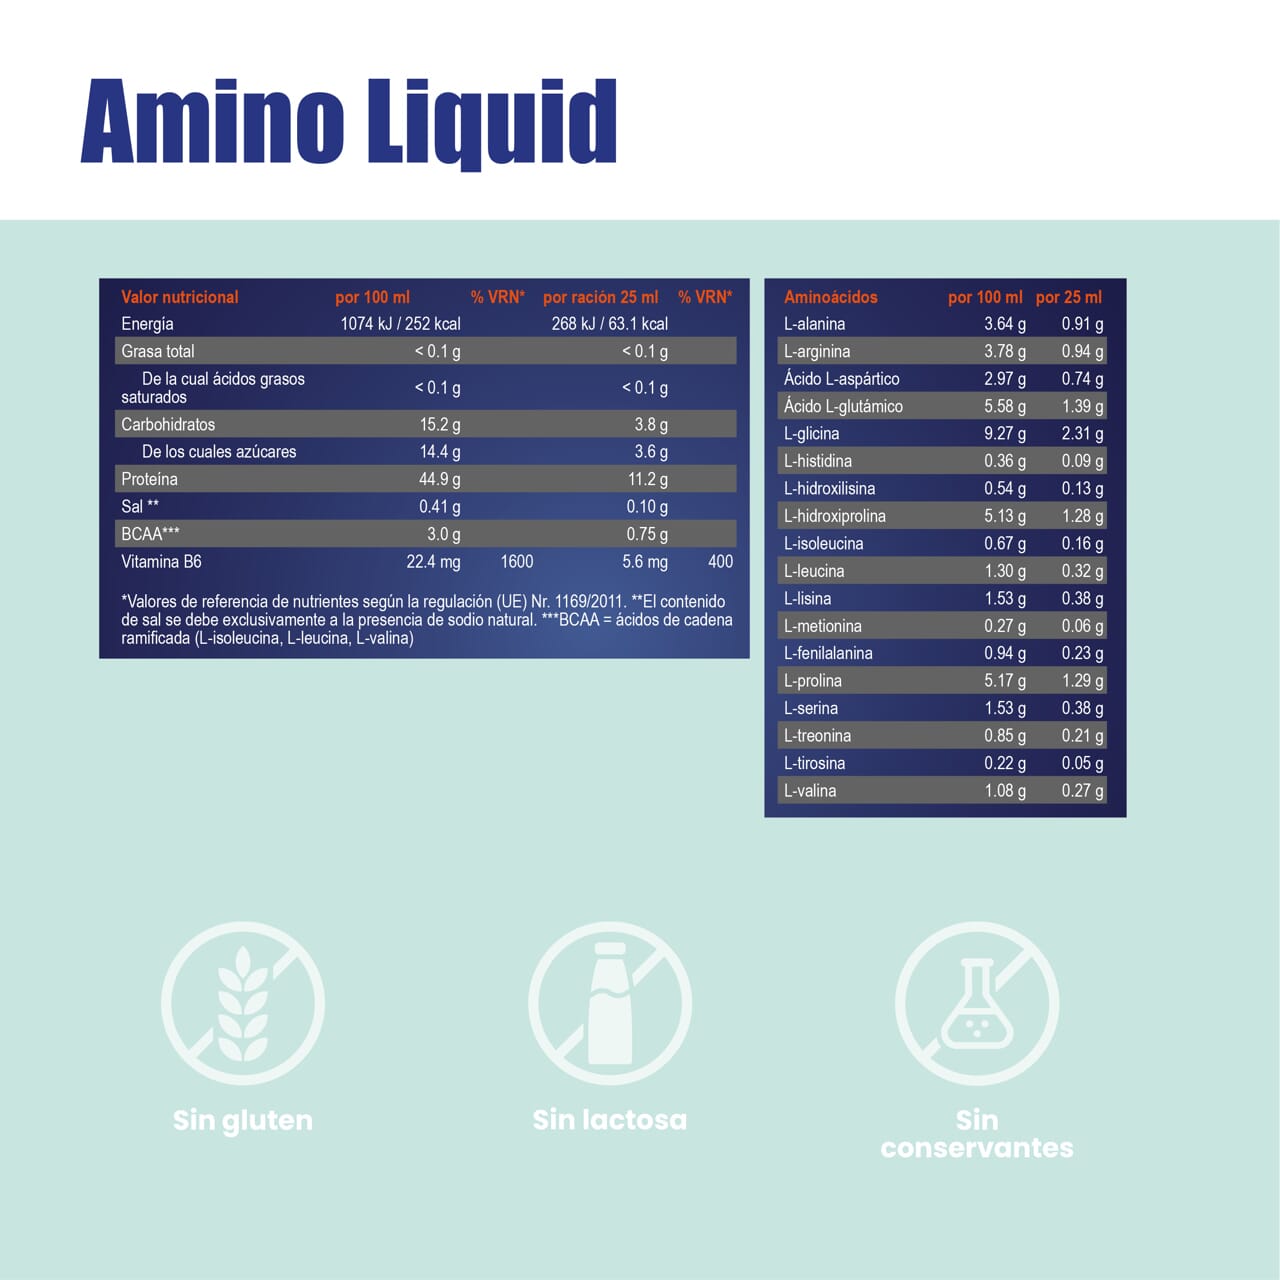 SanaExpert Amino Liquid